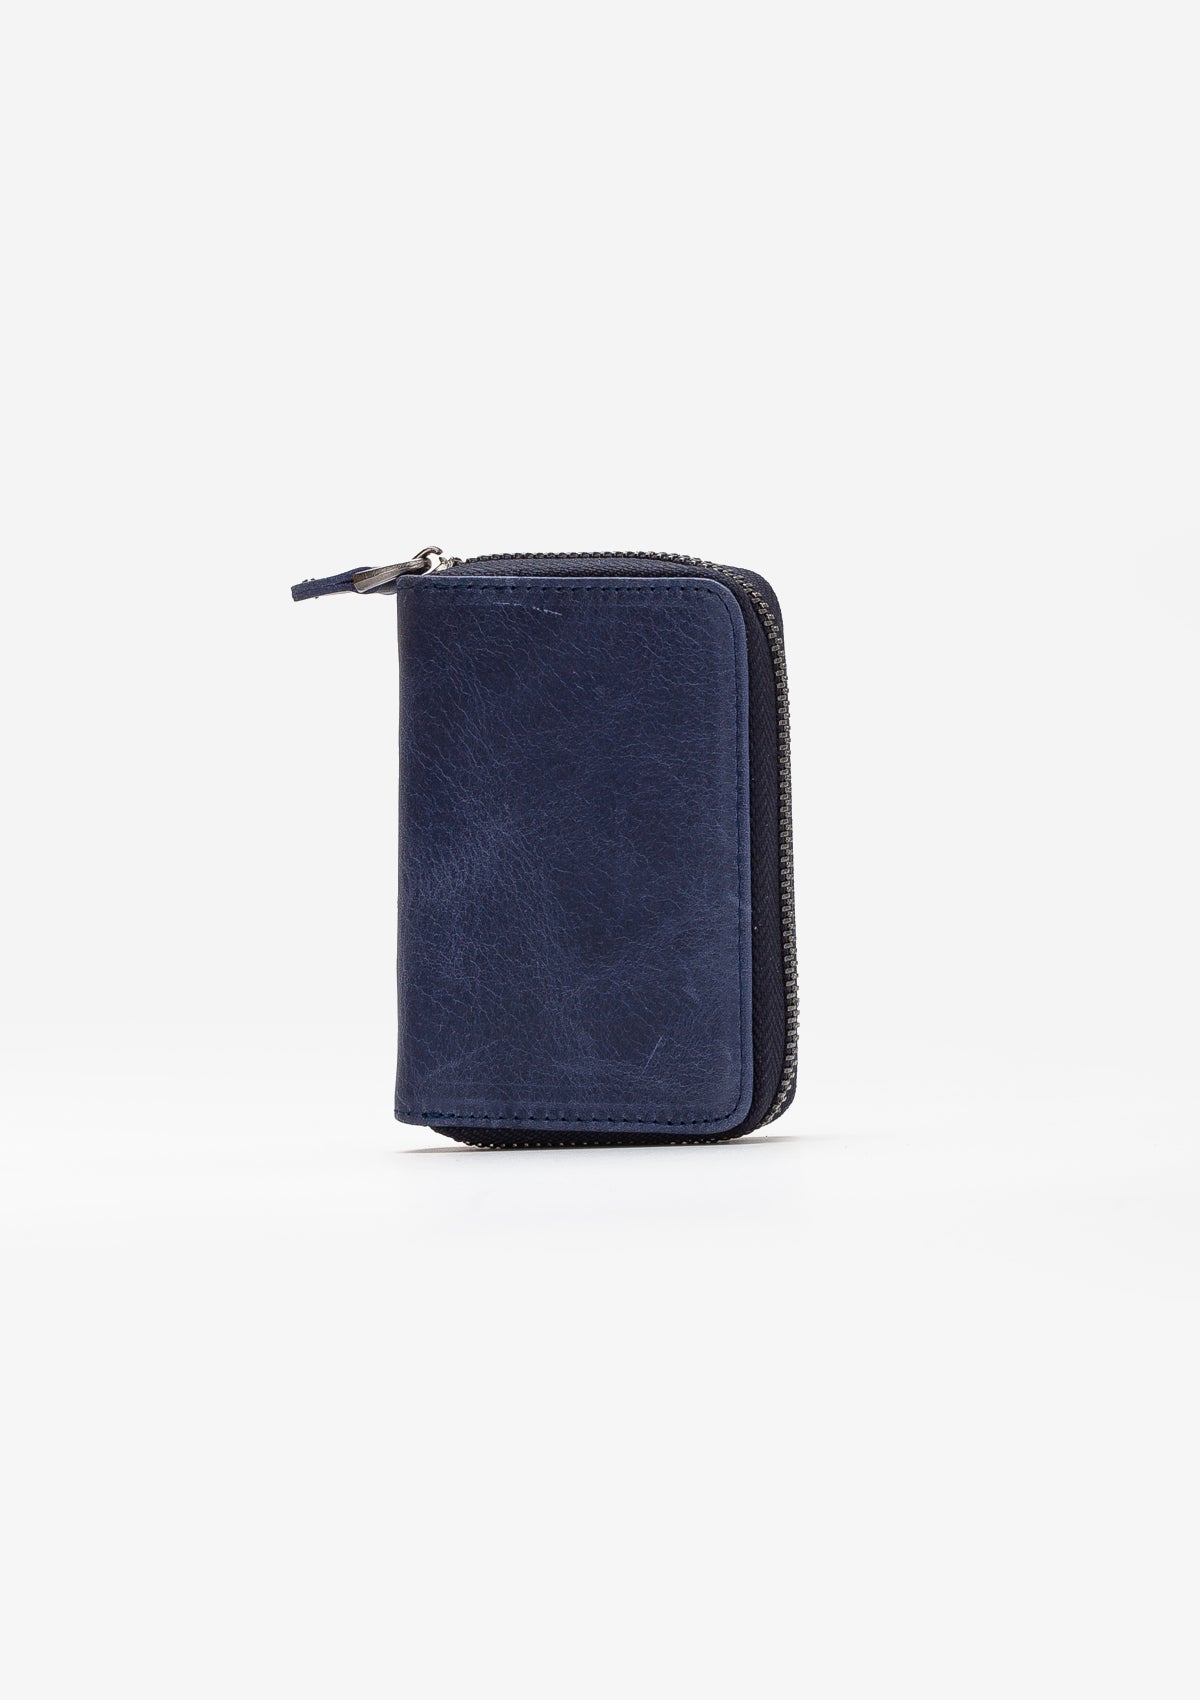 Arahi Vintage Leather Zippered Unisex Card Holder Wallet